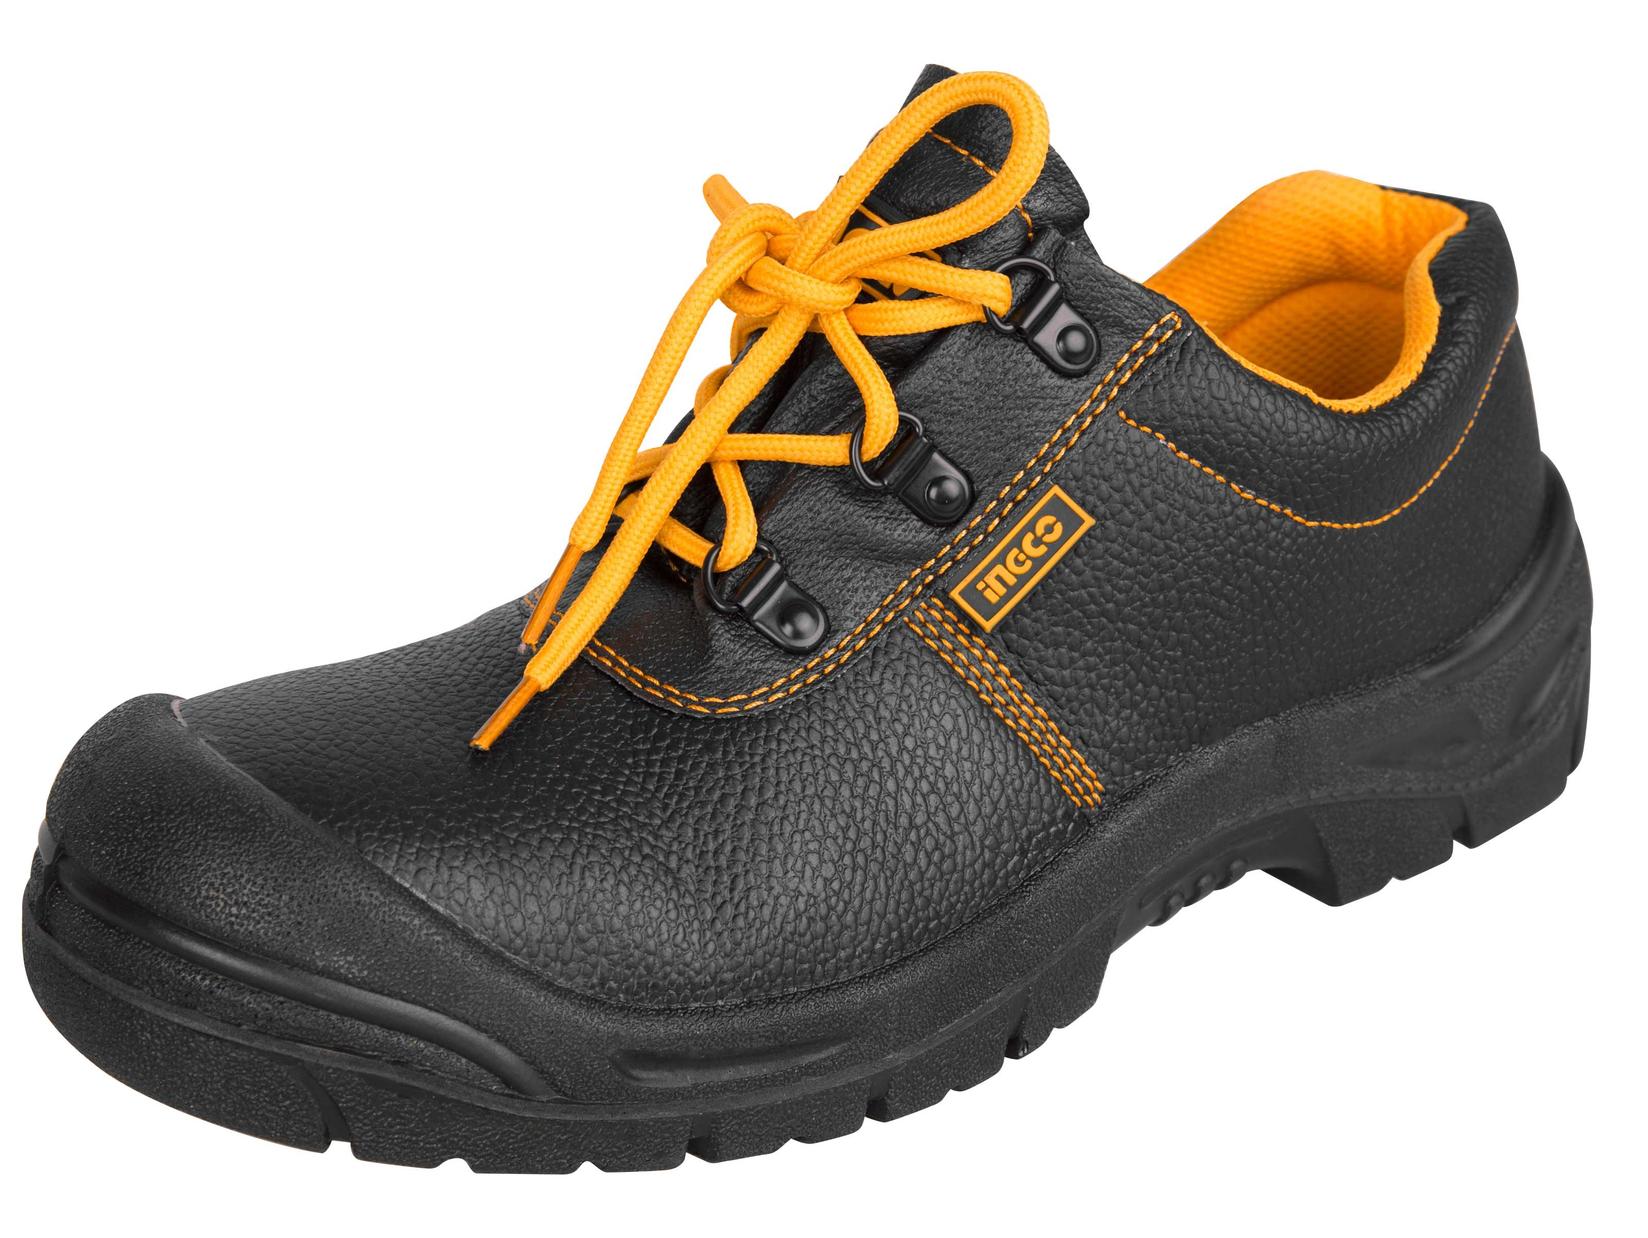 INGCO Zaštitne cipele plitke 41 crne